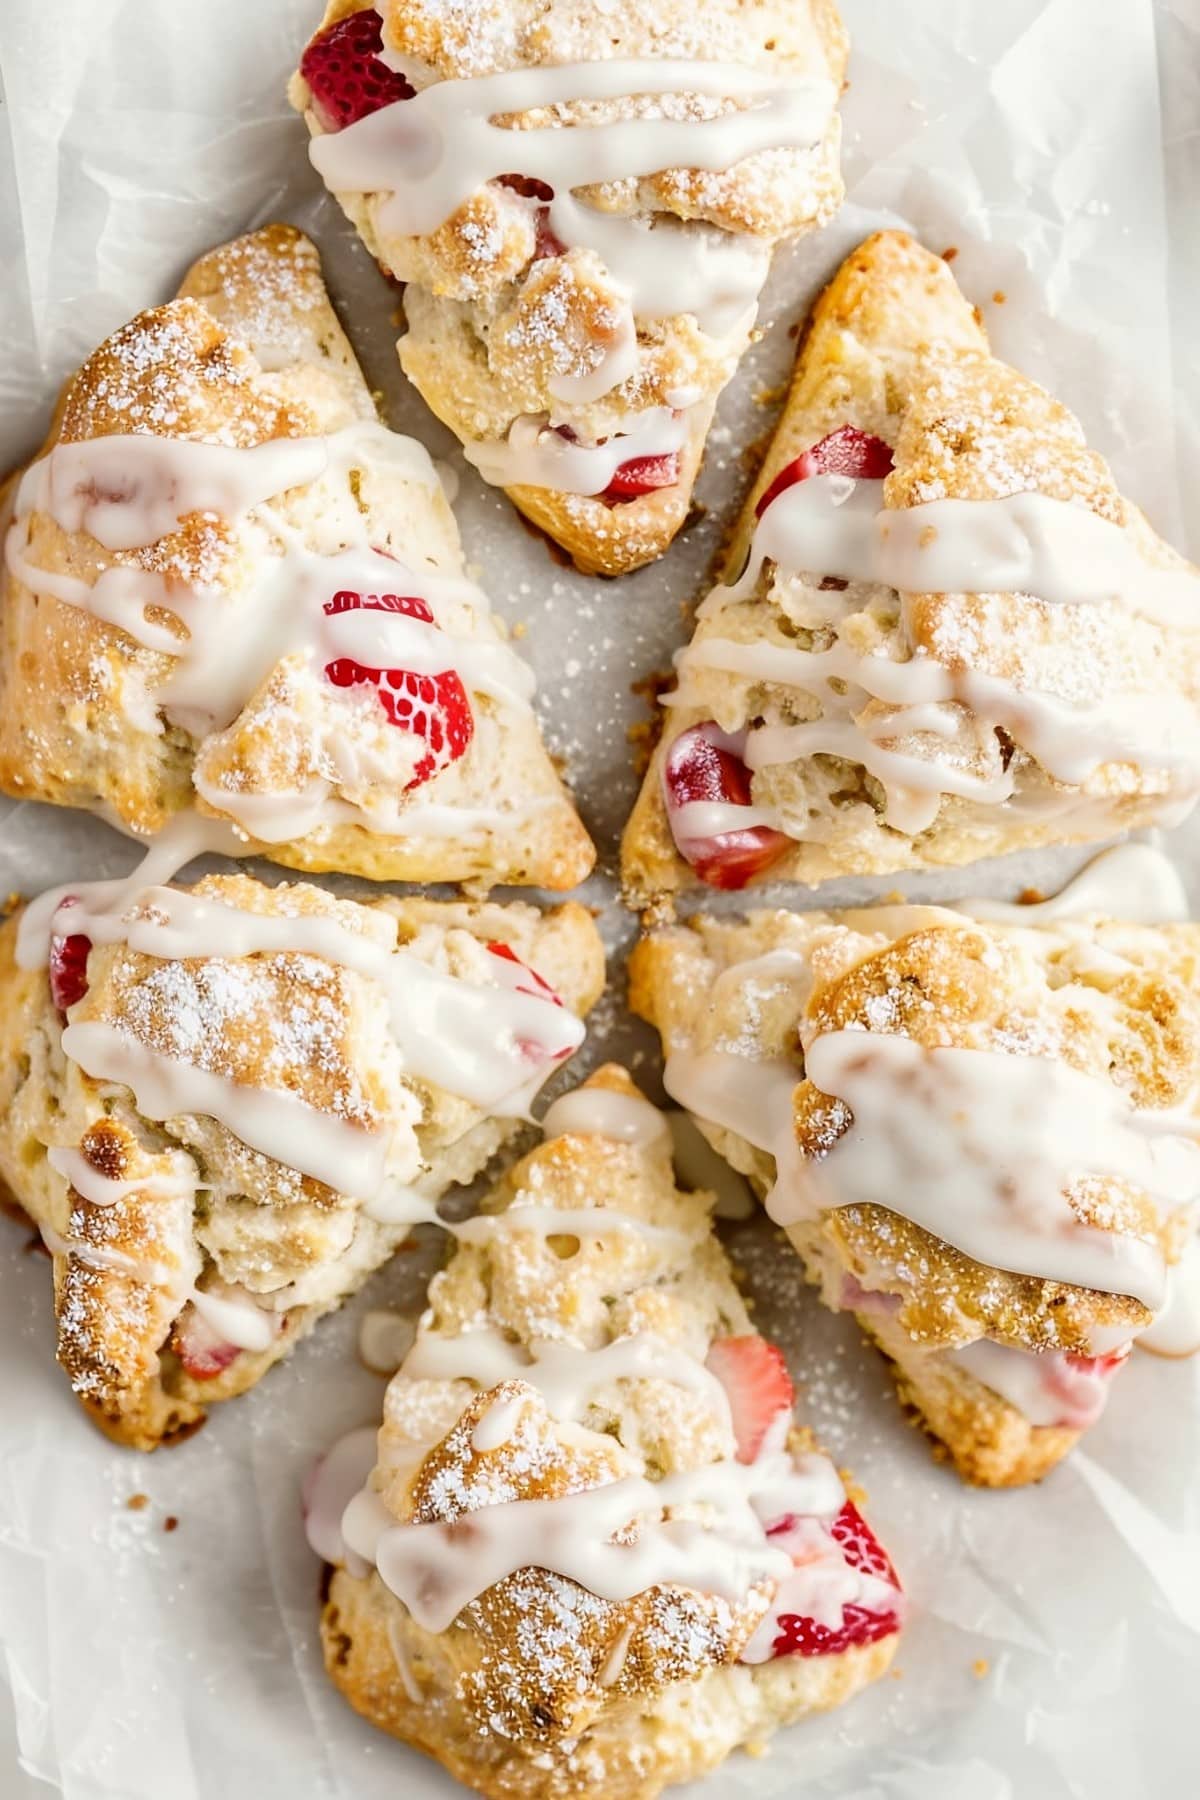 Freshly baked strawberry scones, bursting with sweet glaze